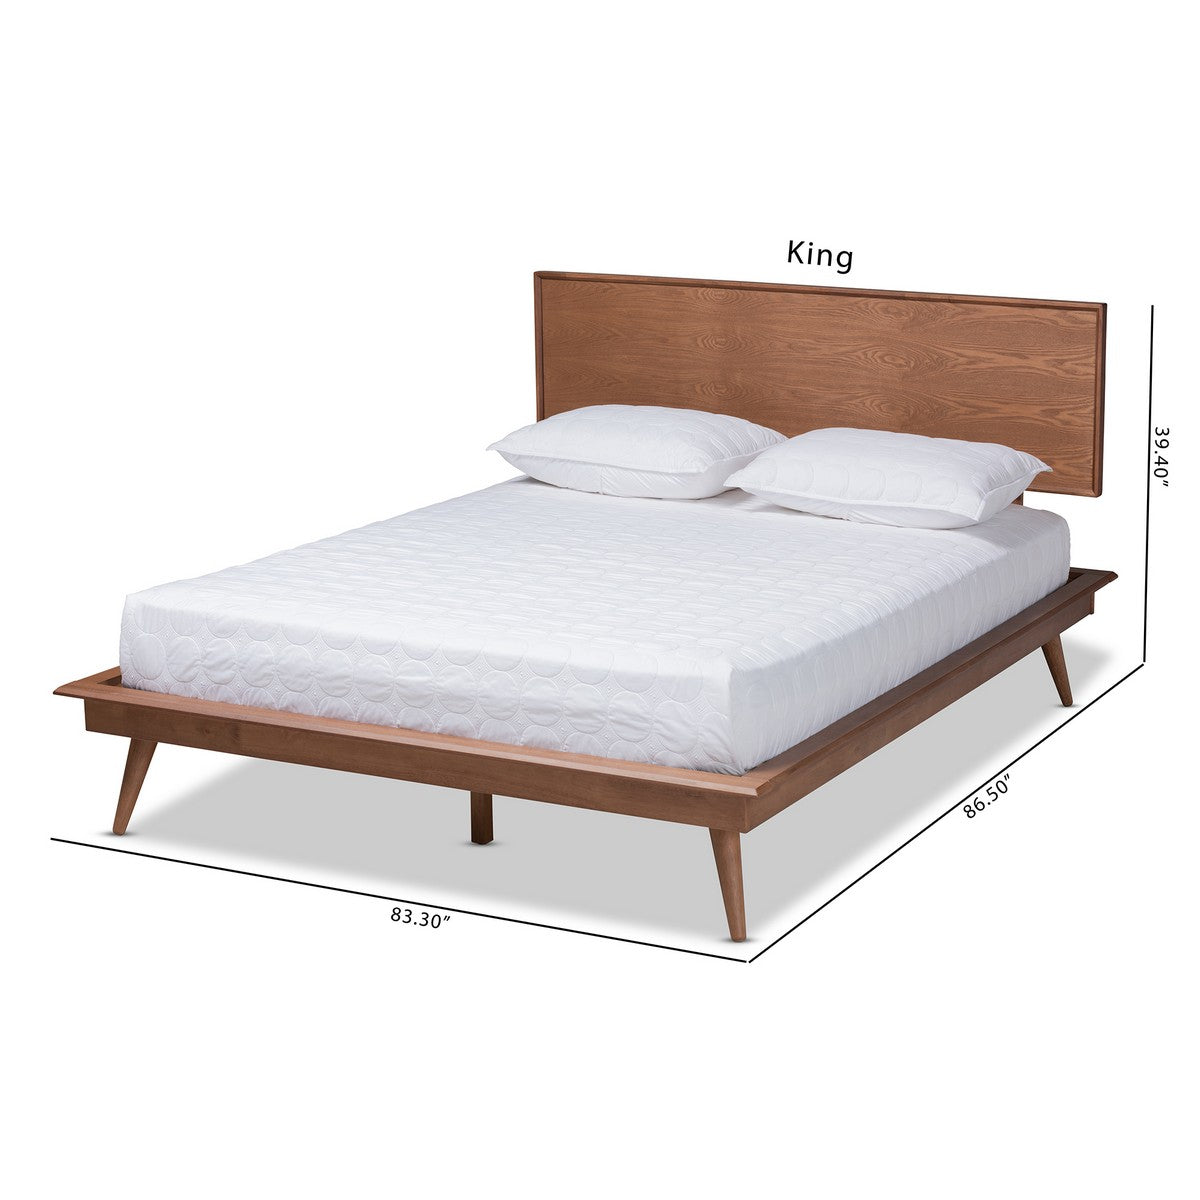 Baxton Studio Karine Mid-Century Modern Walnut Brown Finished Wood Queen Size Platform Bed